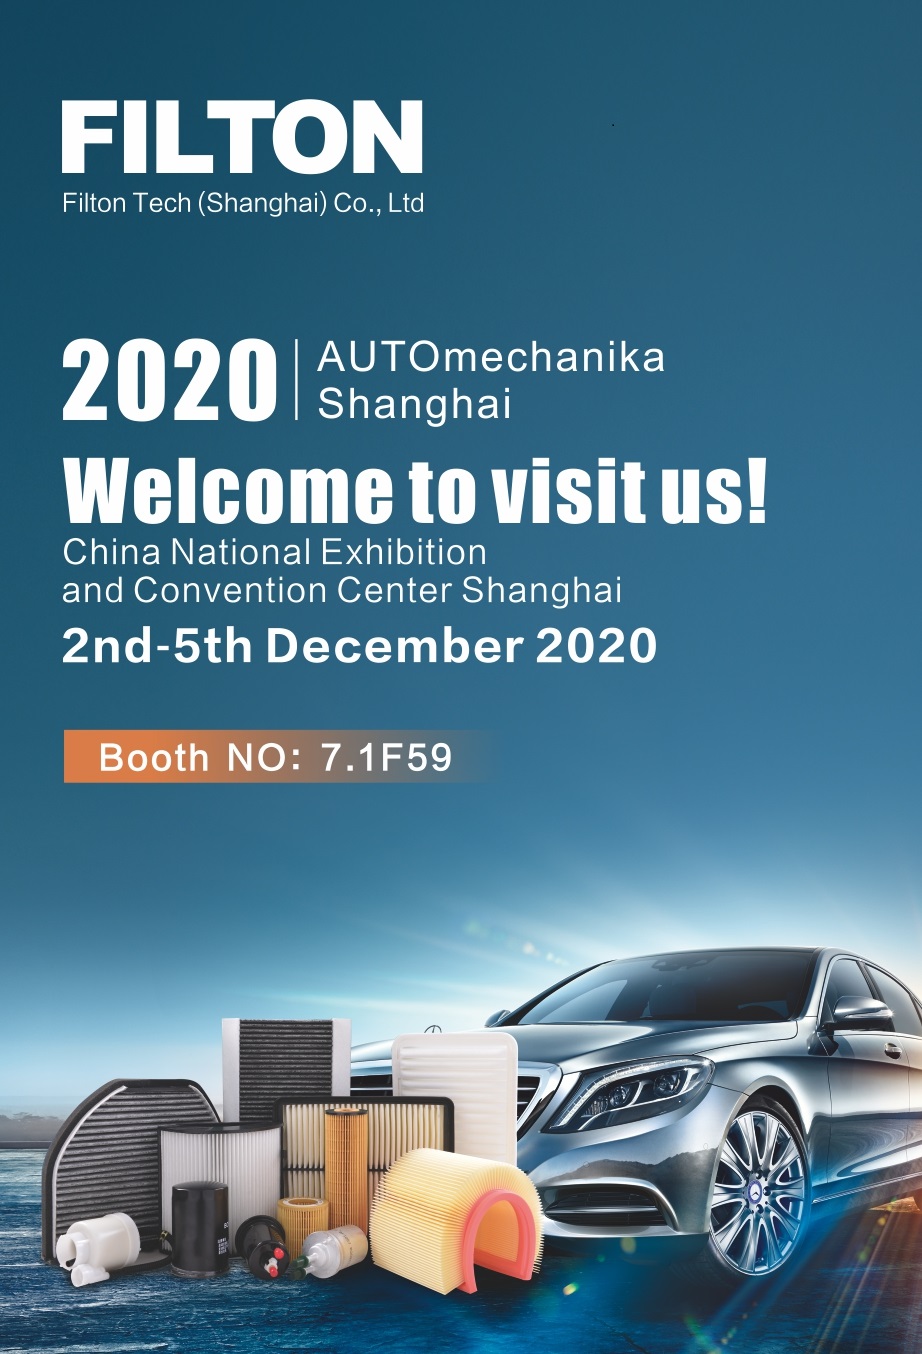 Filton Tech Invites you to Automechanika 2020( Shanghai)